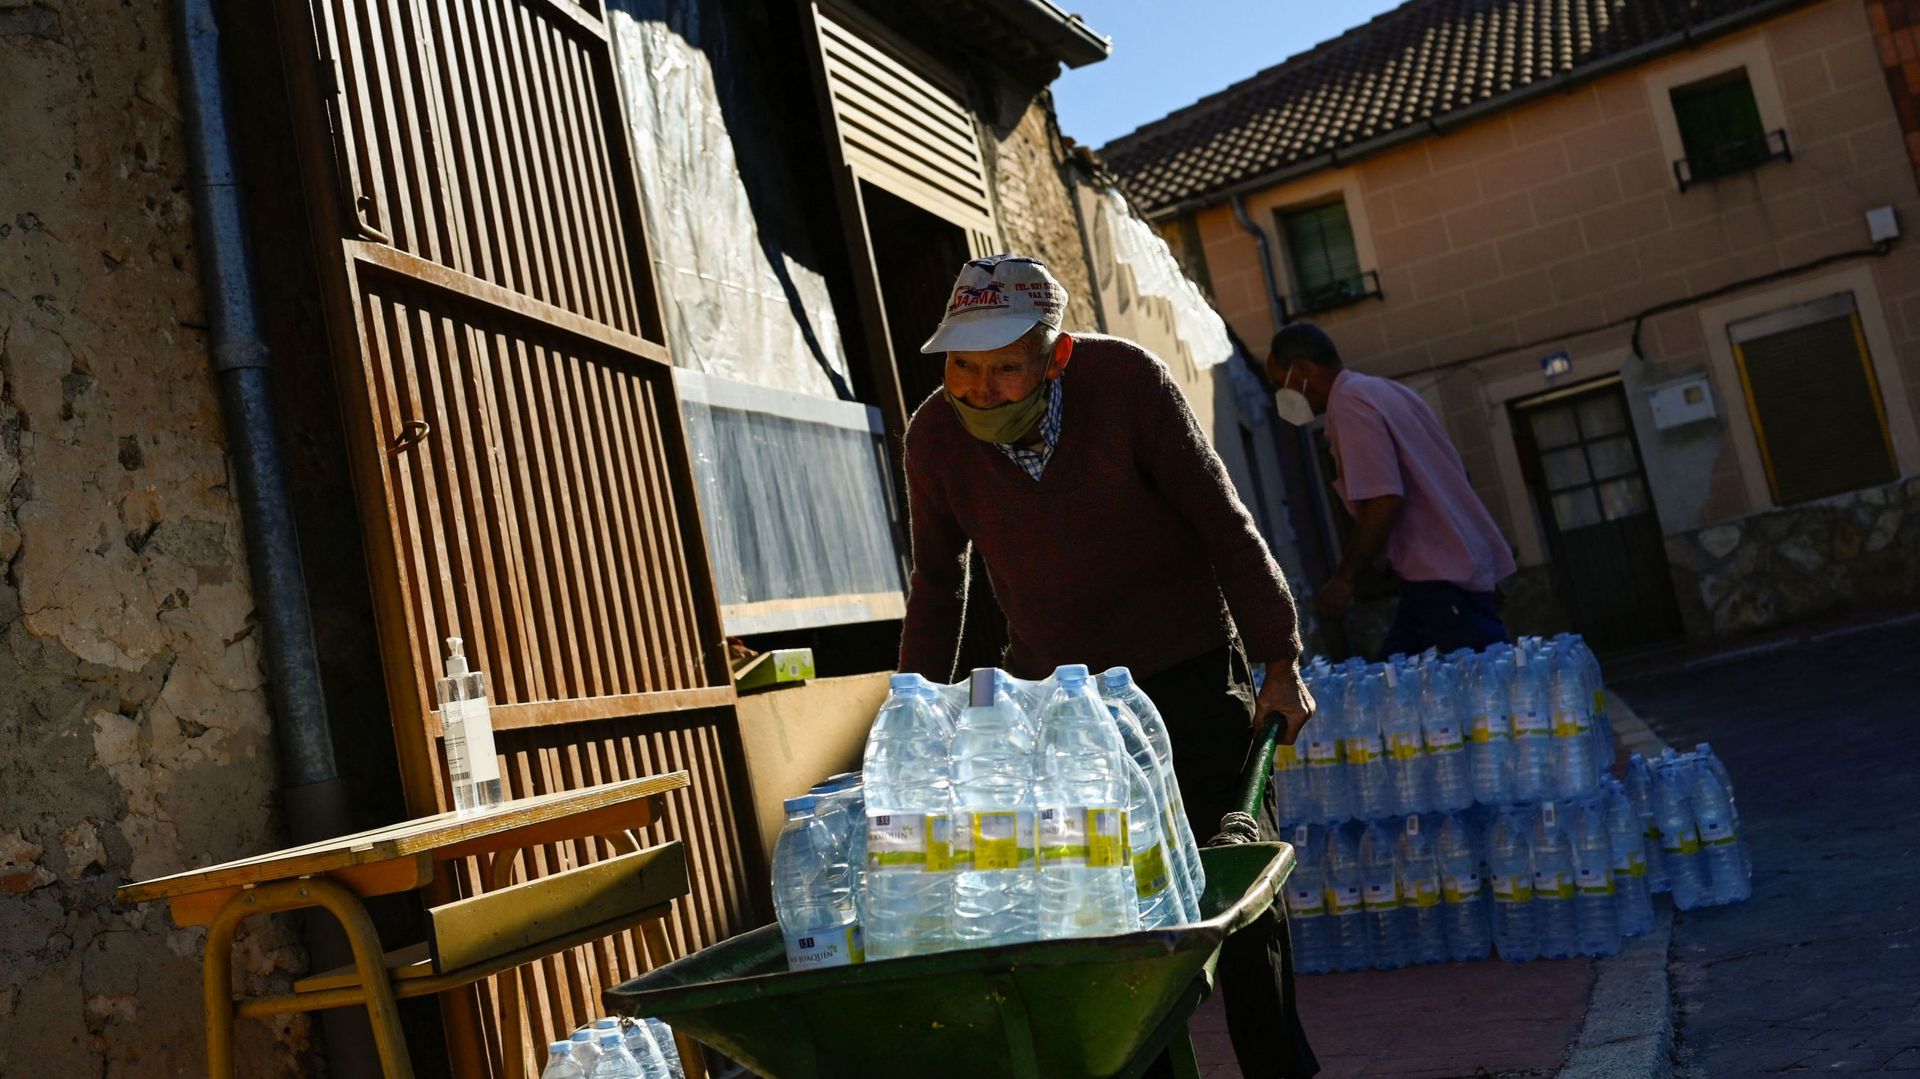 Un homme transporte des bouteilles d’eau minérale dans une brouette à Lastras de Cuellar le 28 juin 2021.